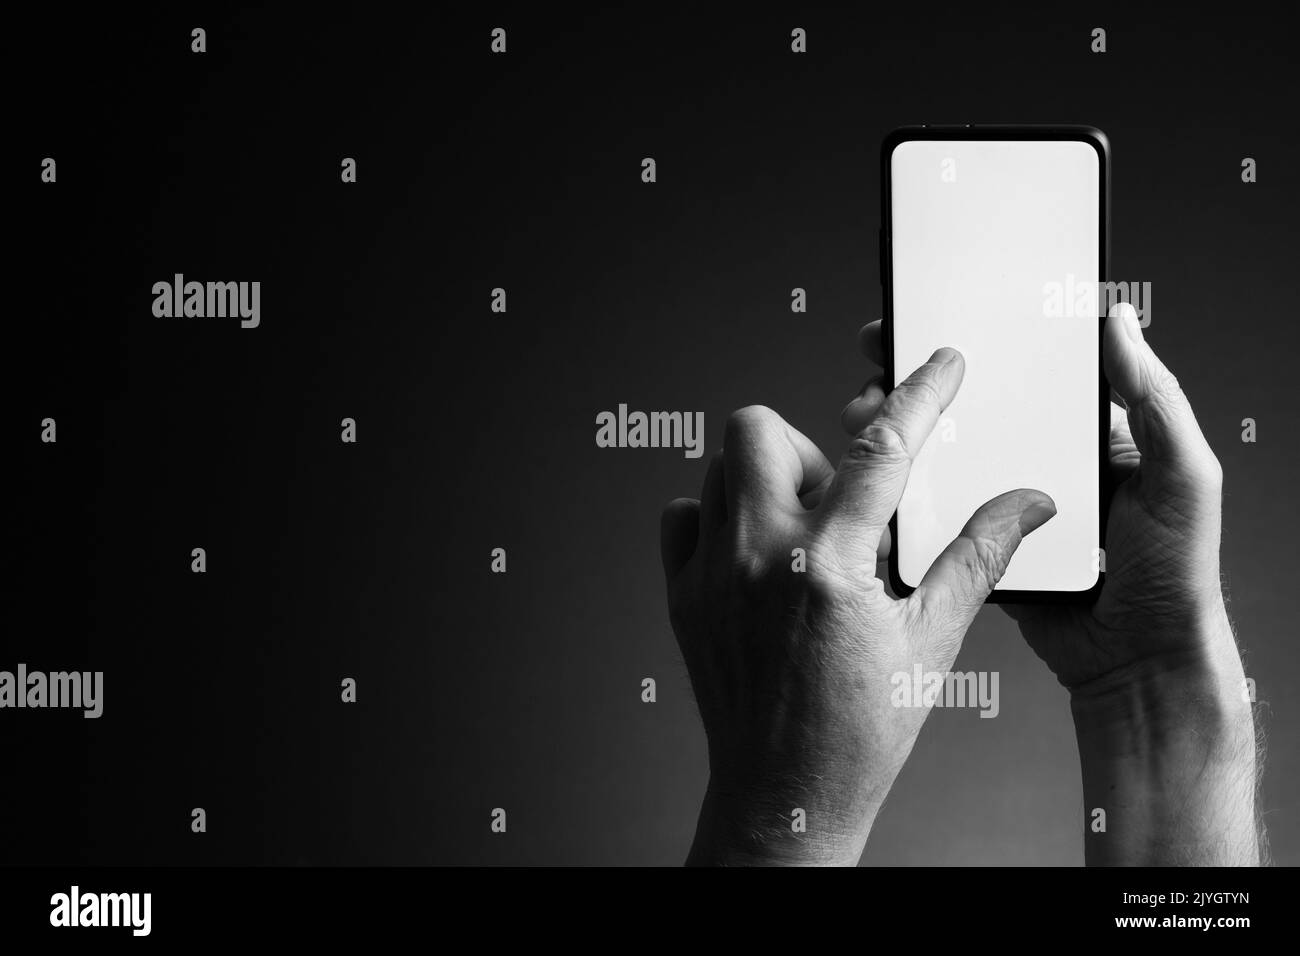 Image en noir et blanc des mains de l'homme tenant le smartphone et zoom par pincement avec écran blanc vierge isolé sur fond sombre avec espace de copie Banque D'Images